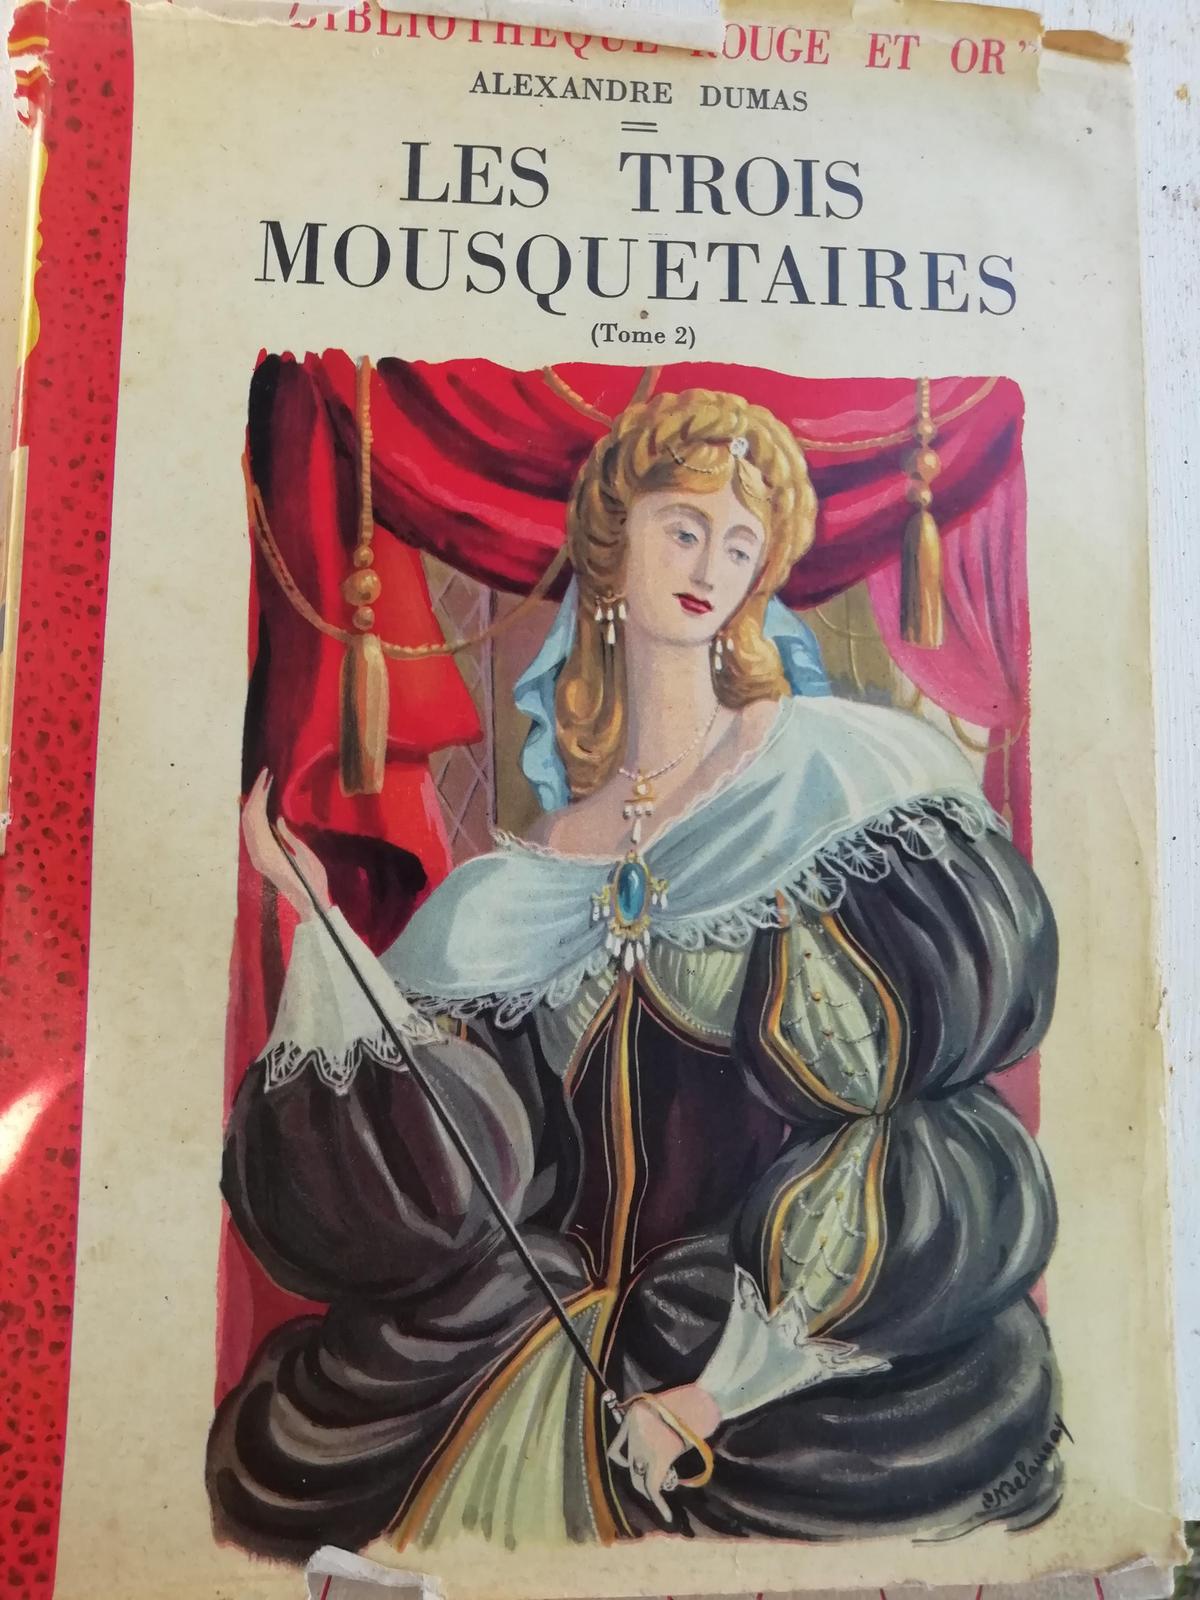 Alexandre Dumas: Les trois mousquetaires (French language, 1952, Bibliothèque rouge et or)